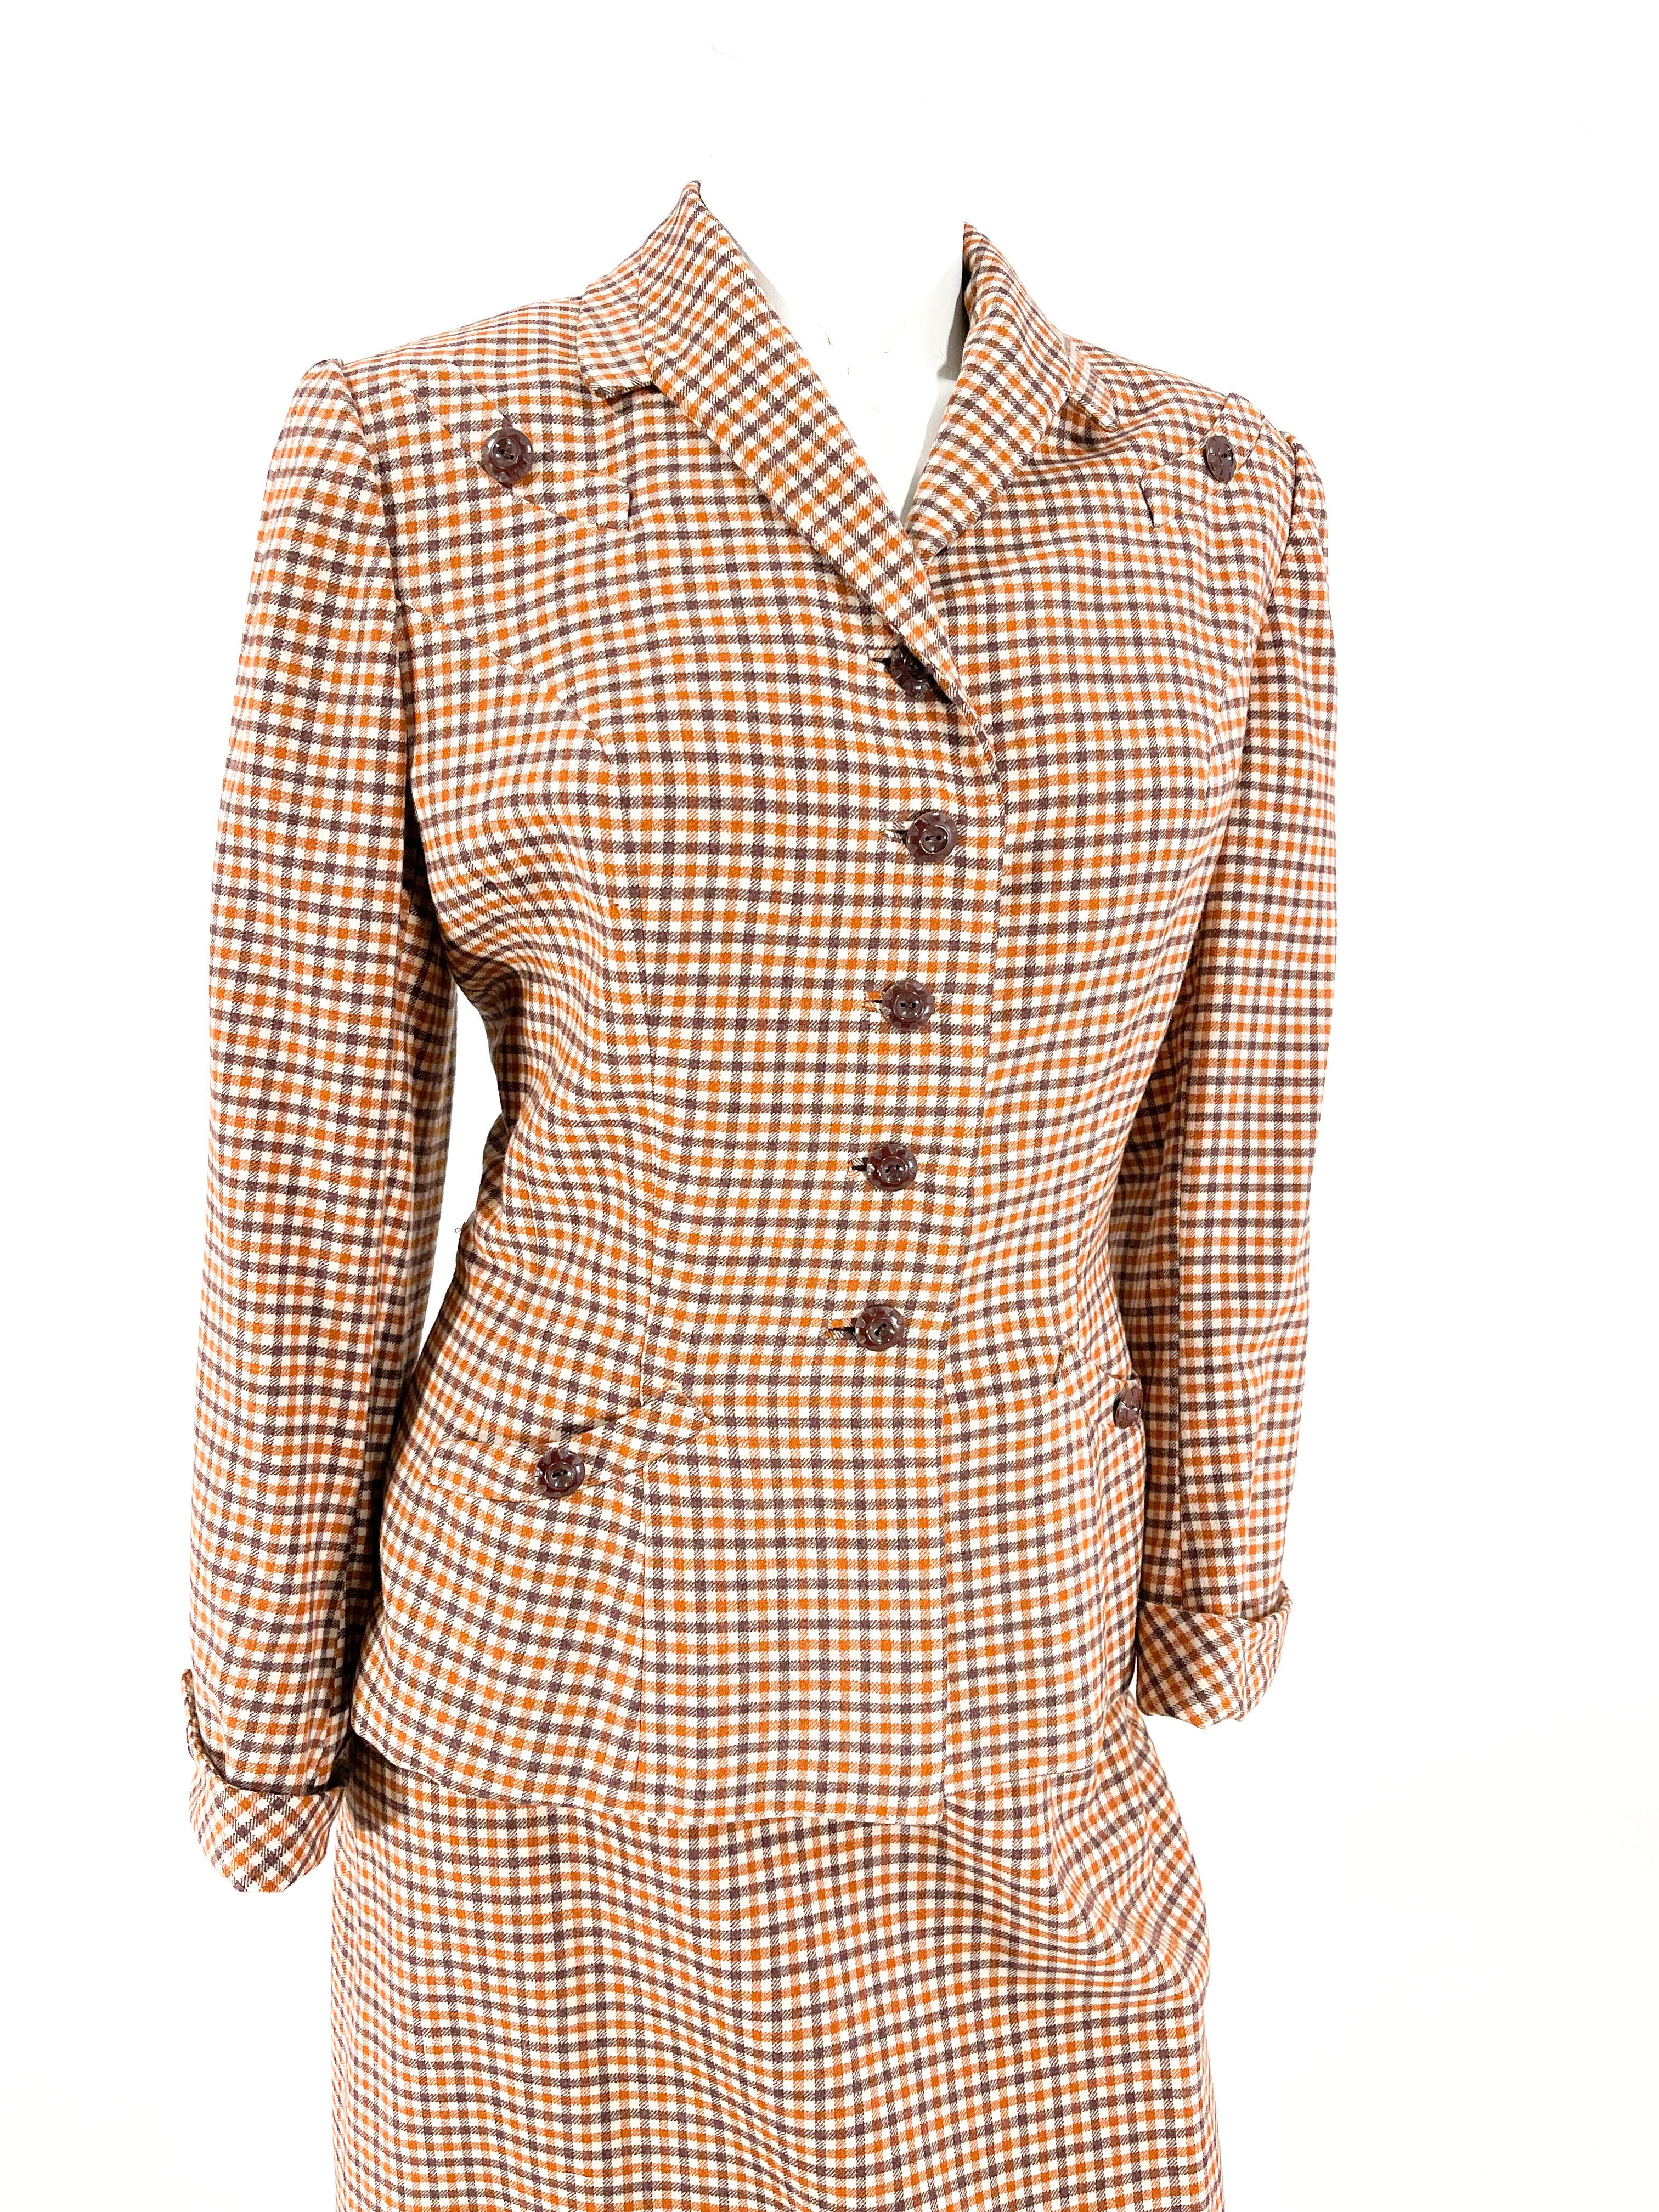 Weiß, braun und rostfarben karierter Wollanzug mit Rock aus den 1940er Jahren. Die Jacke des Anzugs hat einen modifizierten Kragen mit Kerbe, gepolsterte Schultern, zwei obere Faux-Smile-Taschen, schokoladenbraune Knöpfe, eingelassene Knopflöcher,